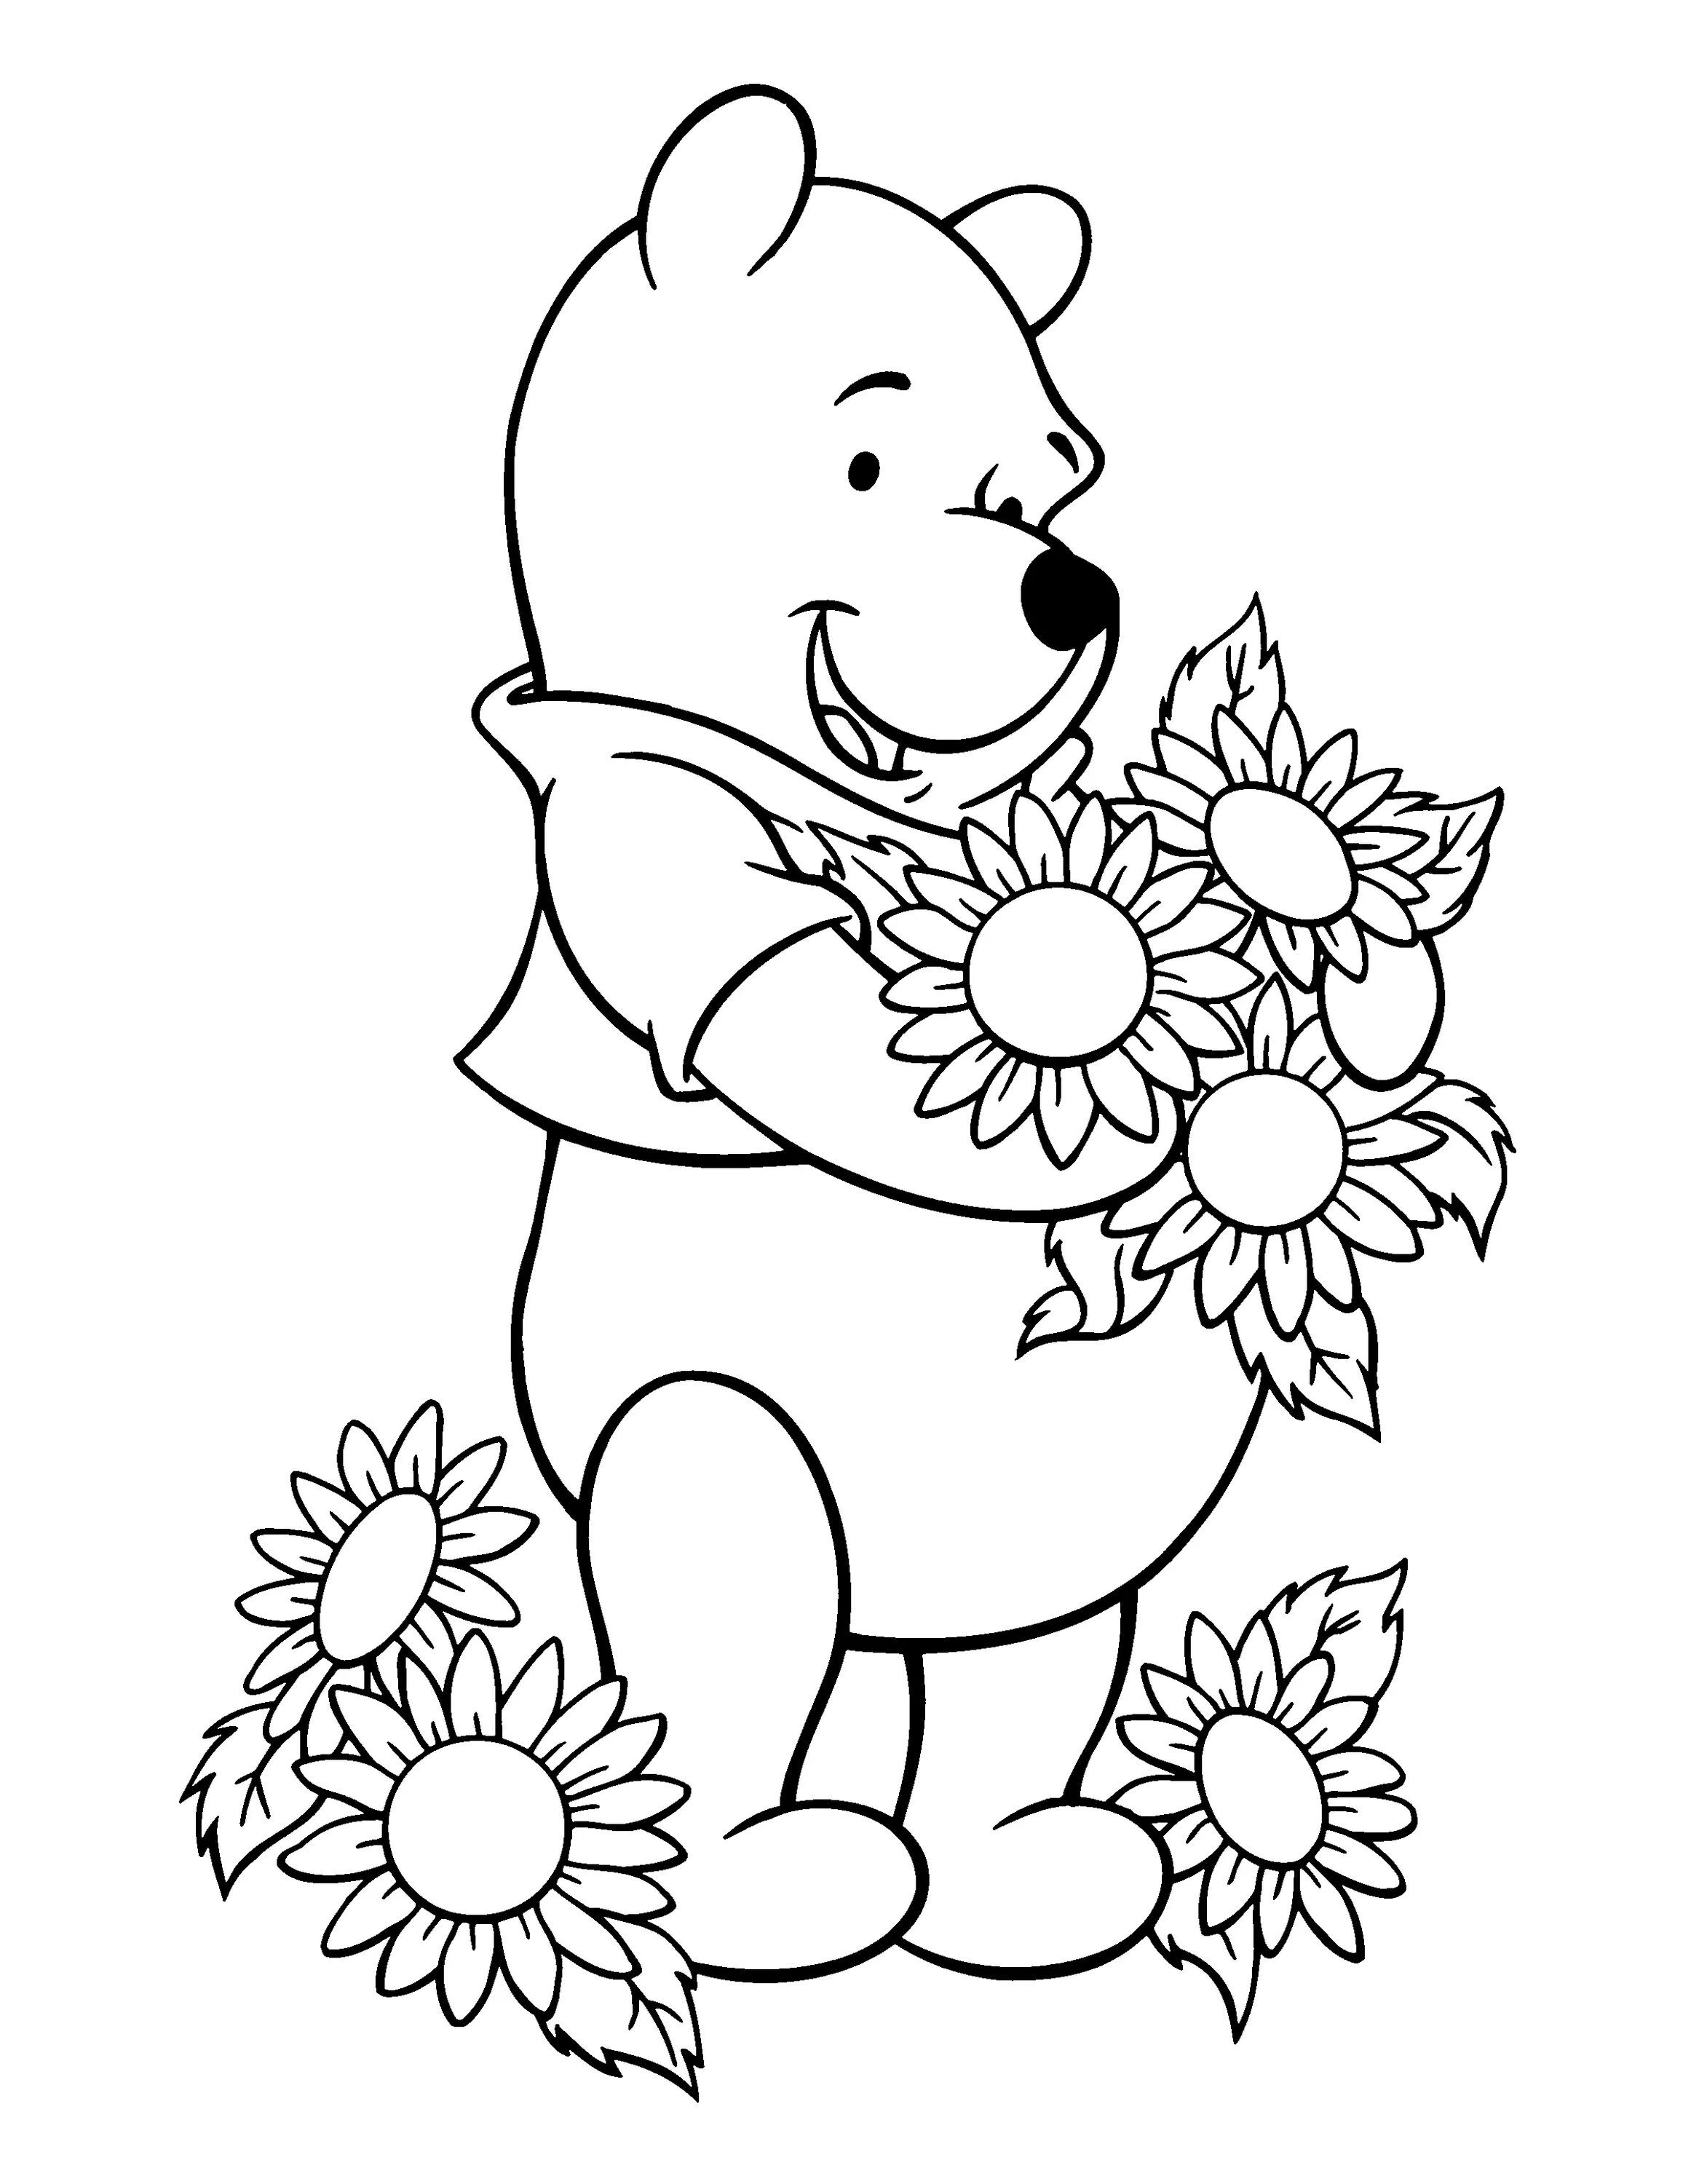 Распечатать картинки. Раскраска мишка Винни пух. Медвежонок с цветами раскраска. Мишка с цветами раскраска. Раскраски для девочек медвежата.